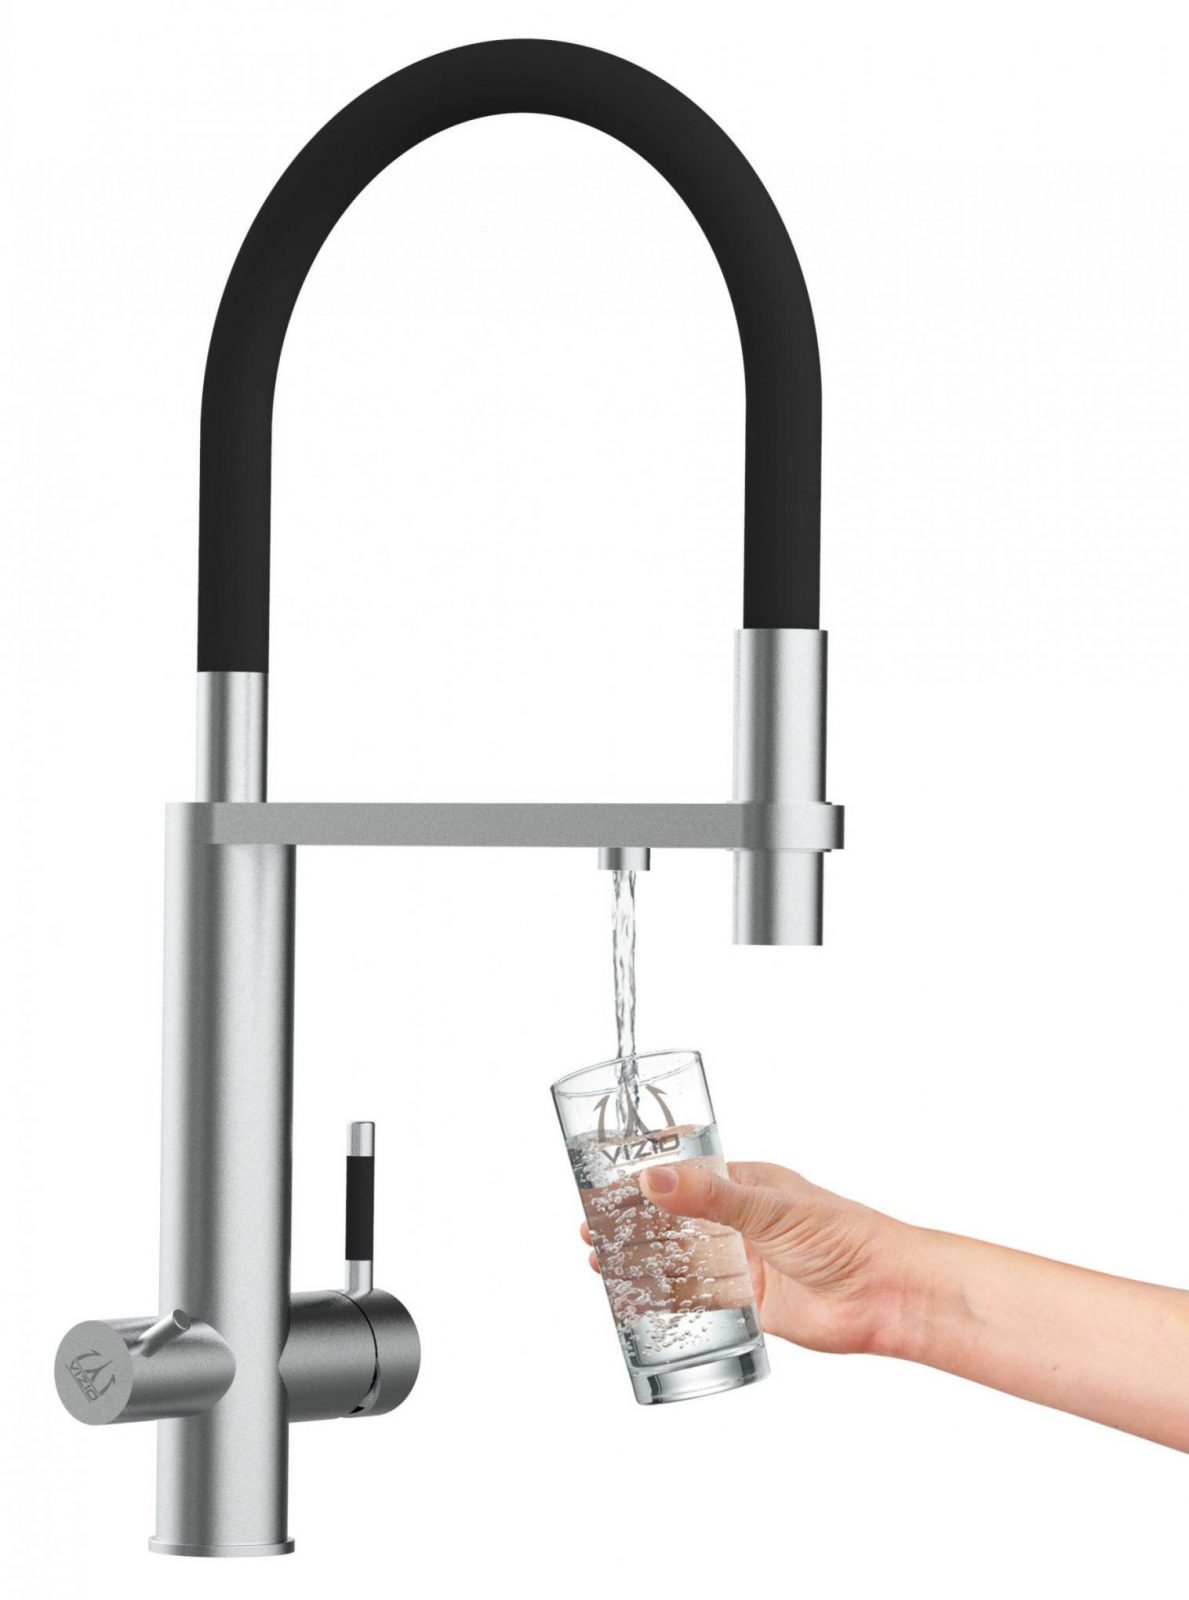 Edelstahl Küchenarmatur Umkehr Osmose Filter Trinkwasser von Küchenarmatur Mit Brause Edelstahl Bild